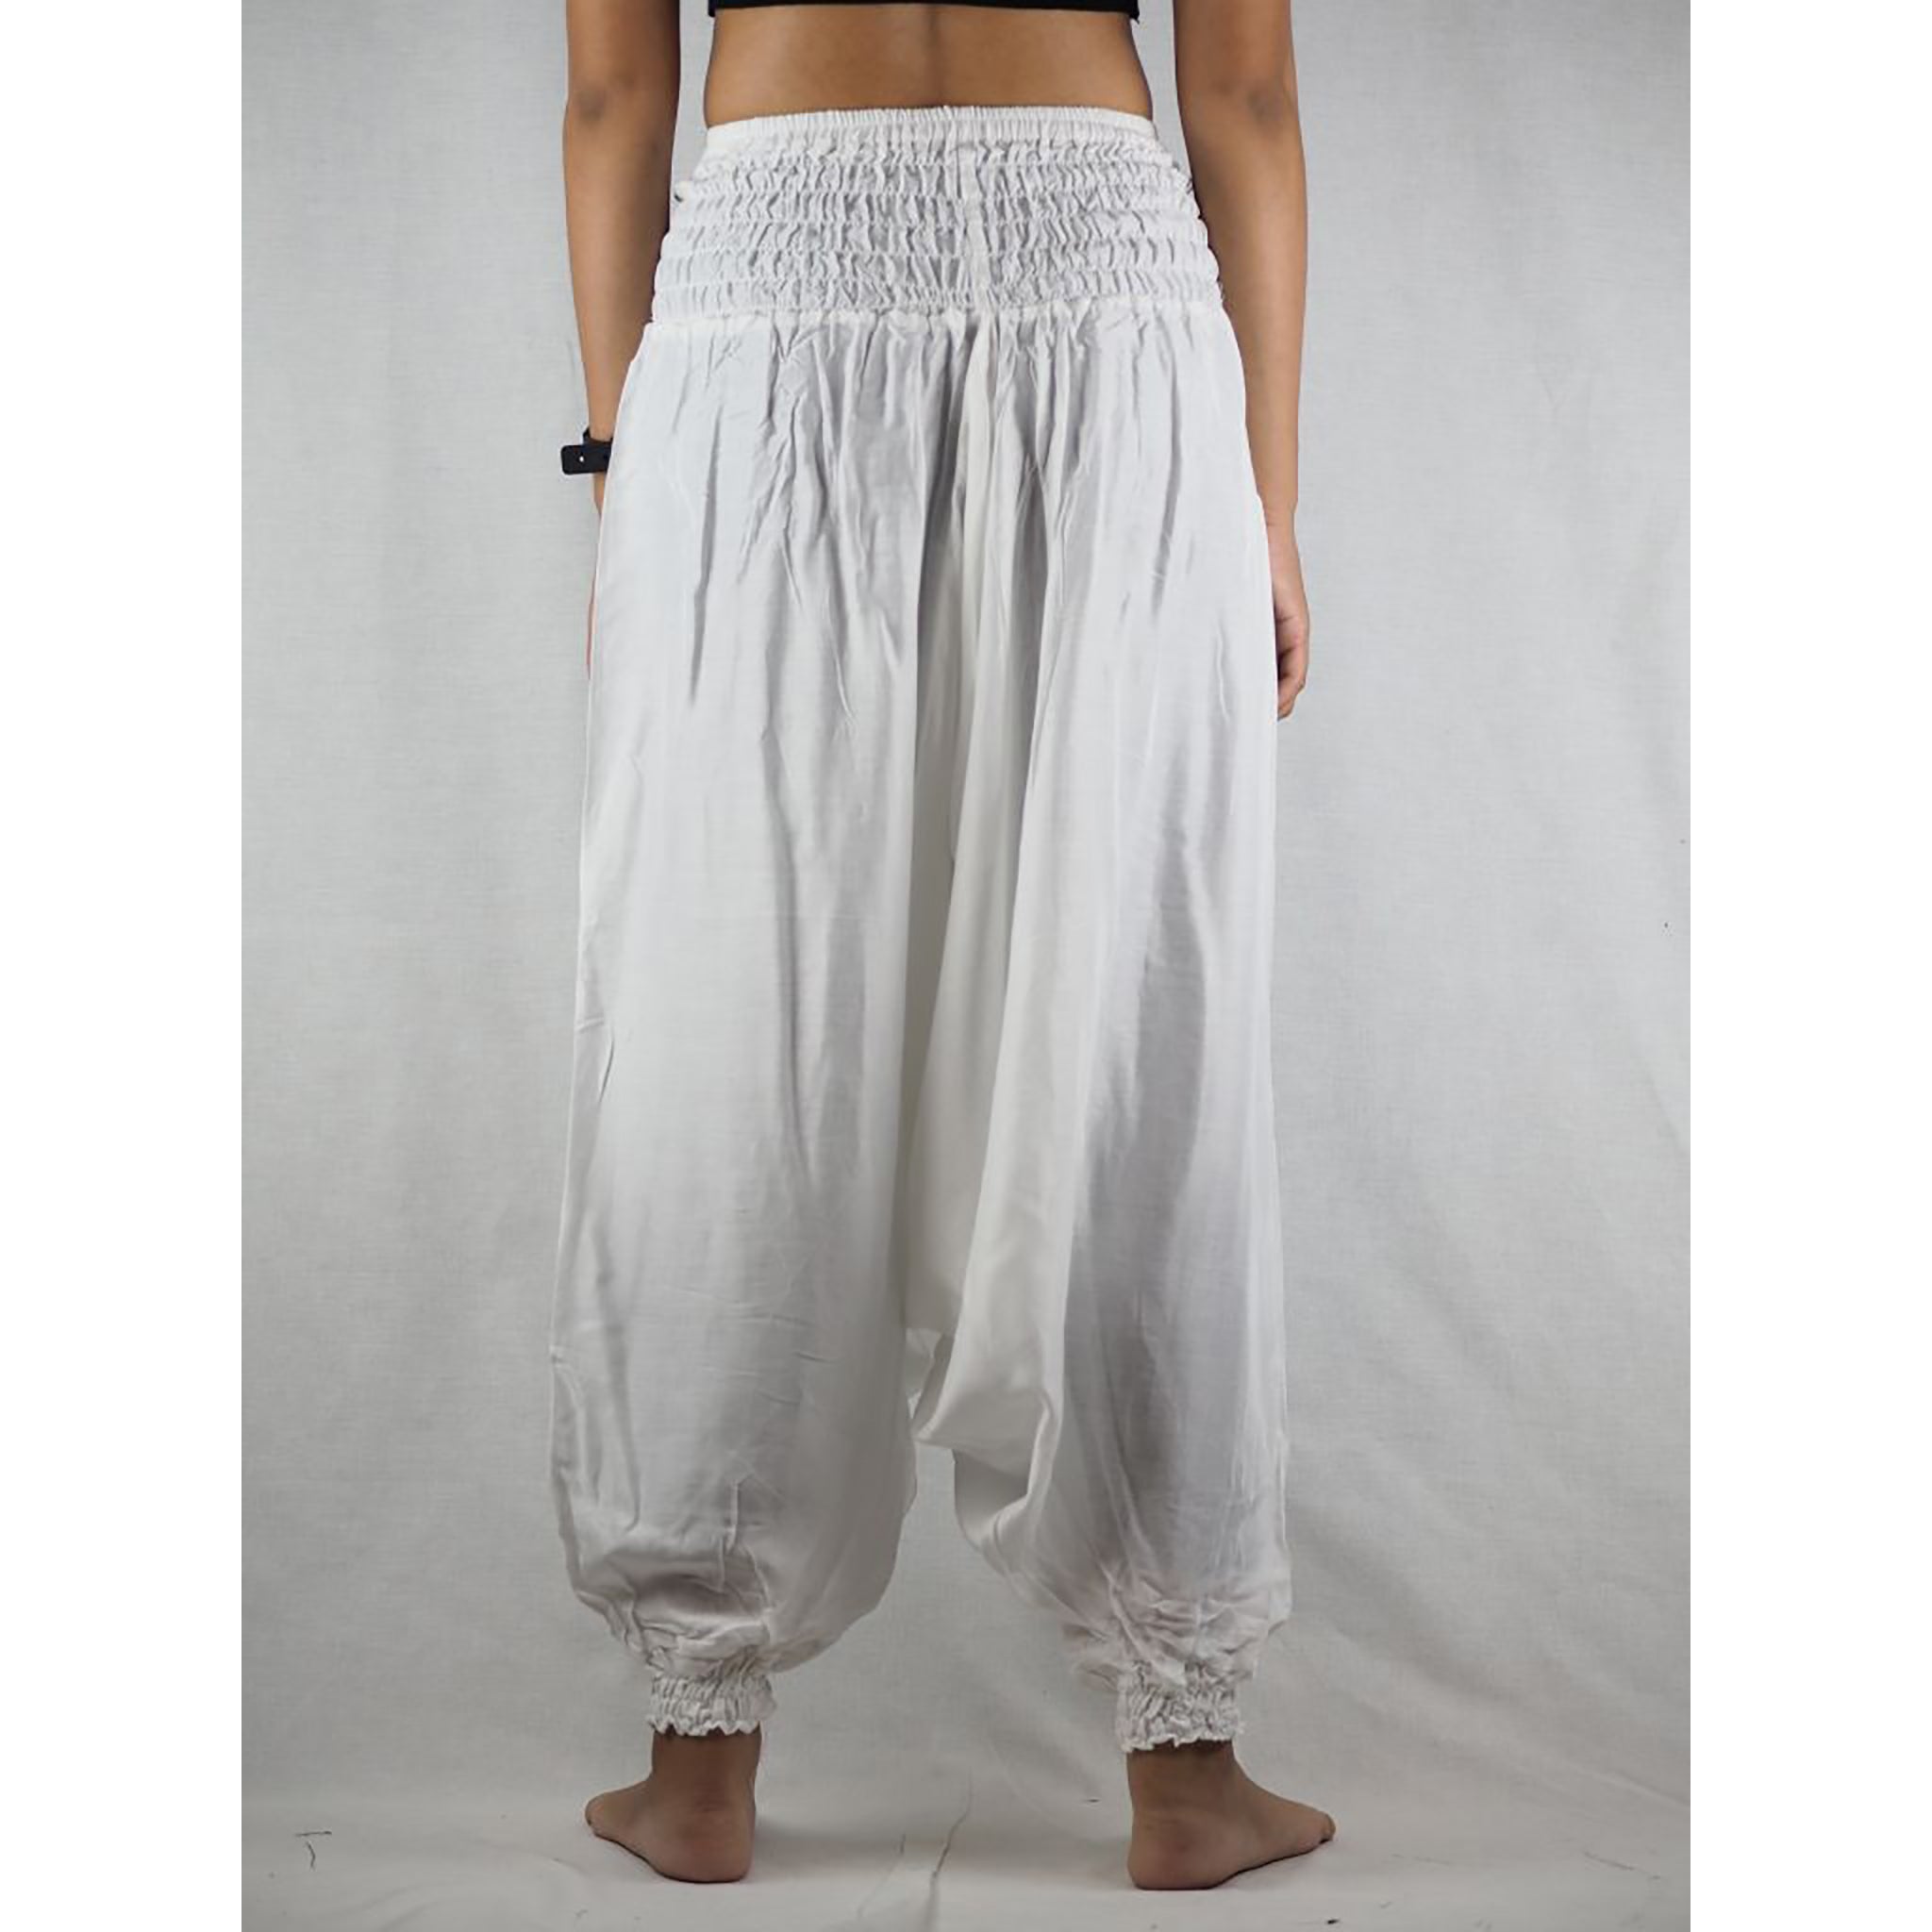 Women's Low crotch Loose Boho Yoga Harem Pants (Twisted Wisdom Grey-White)